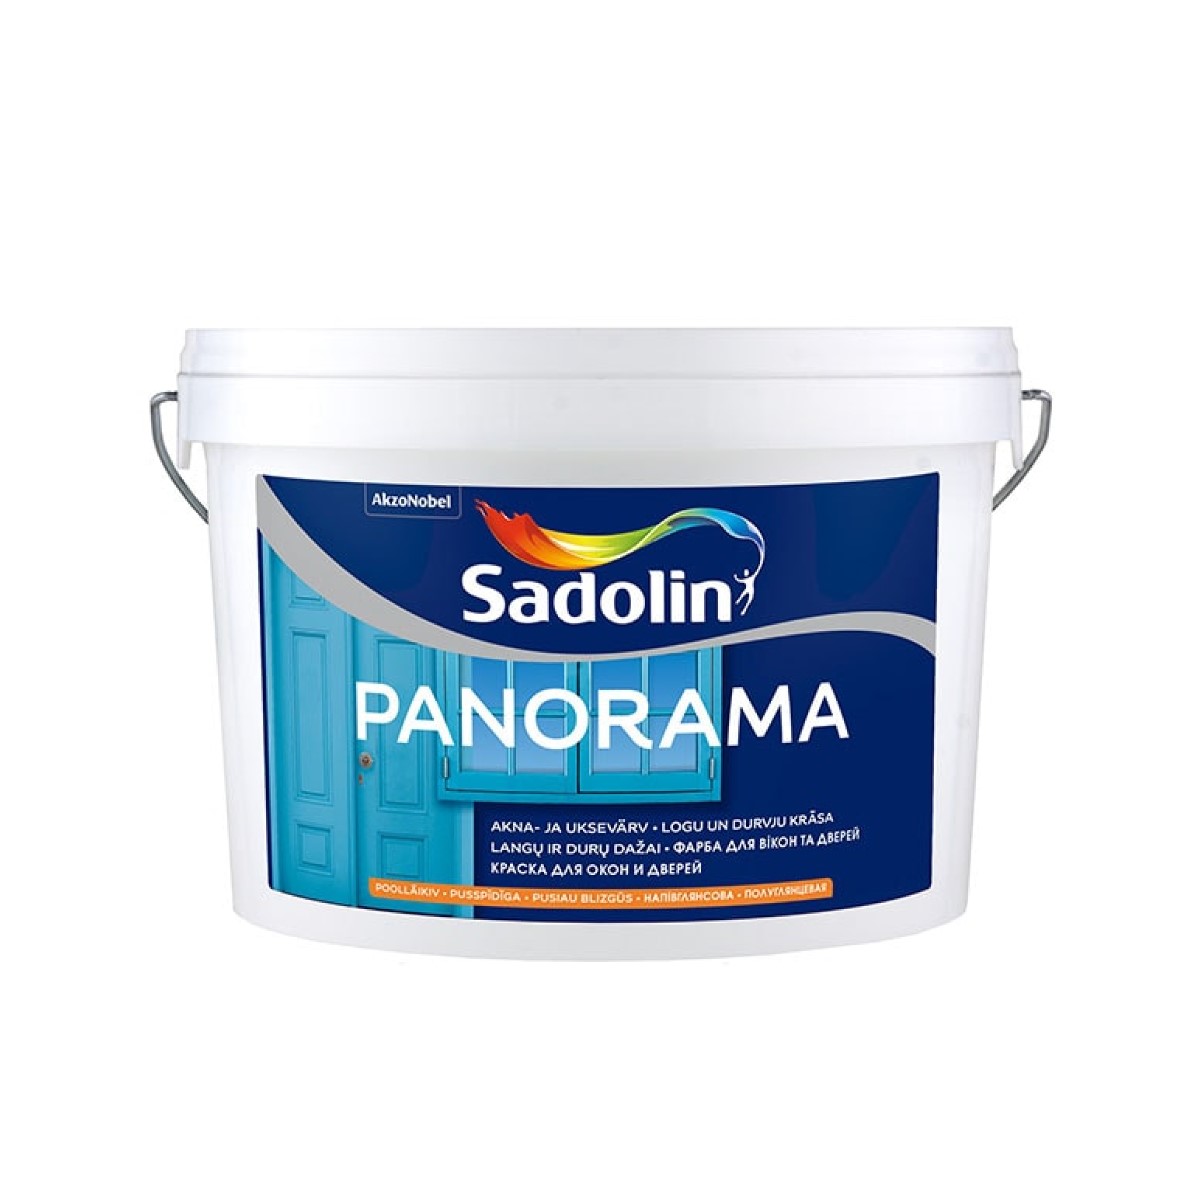 Sadolin PANORAMA balta BW 2.5 L